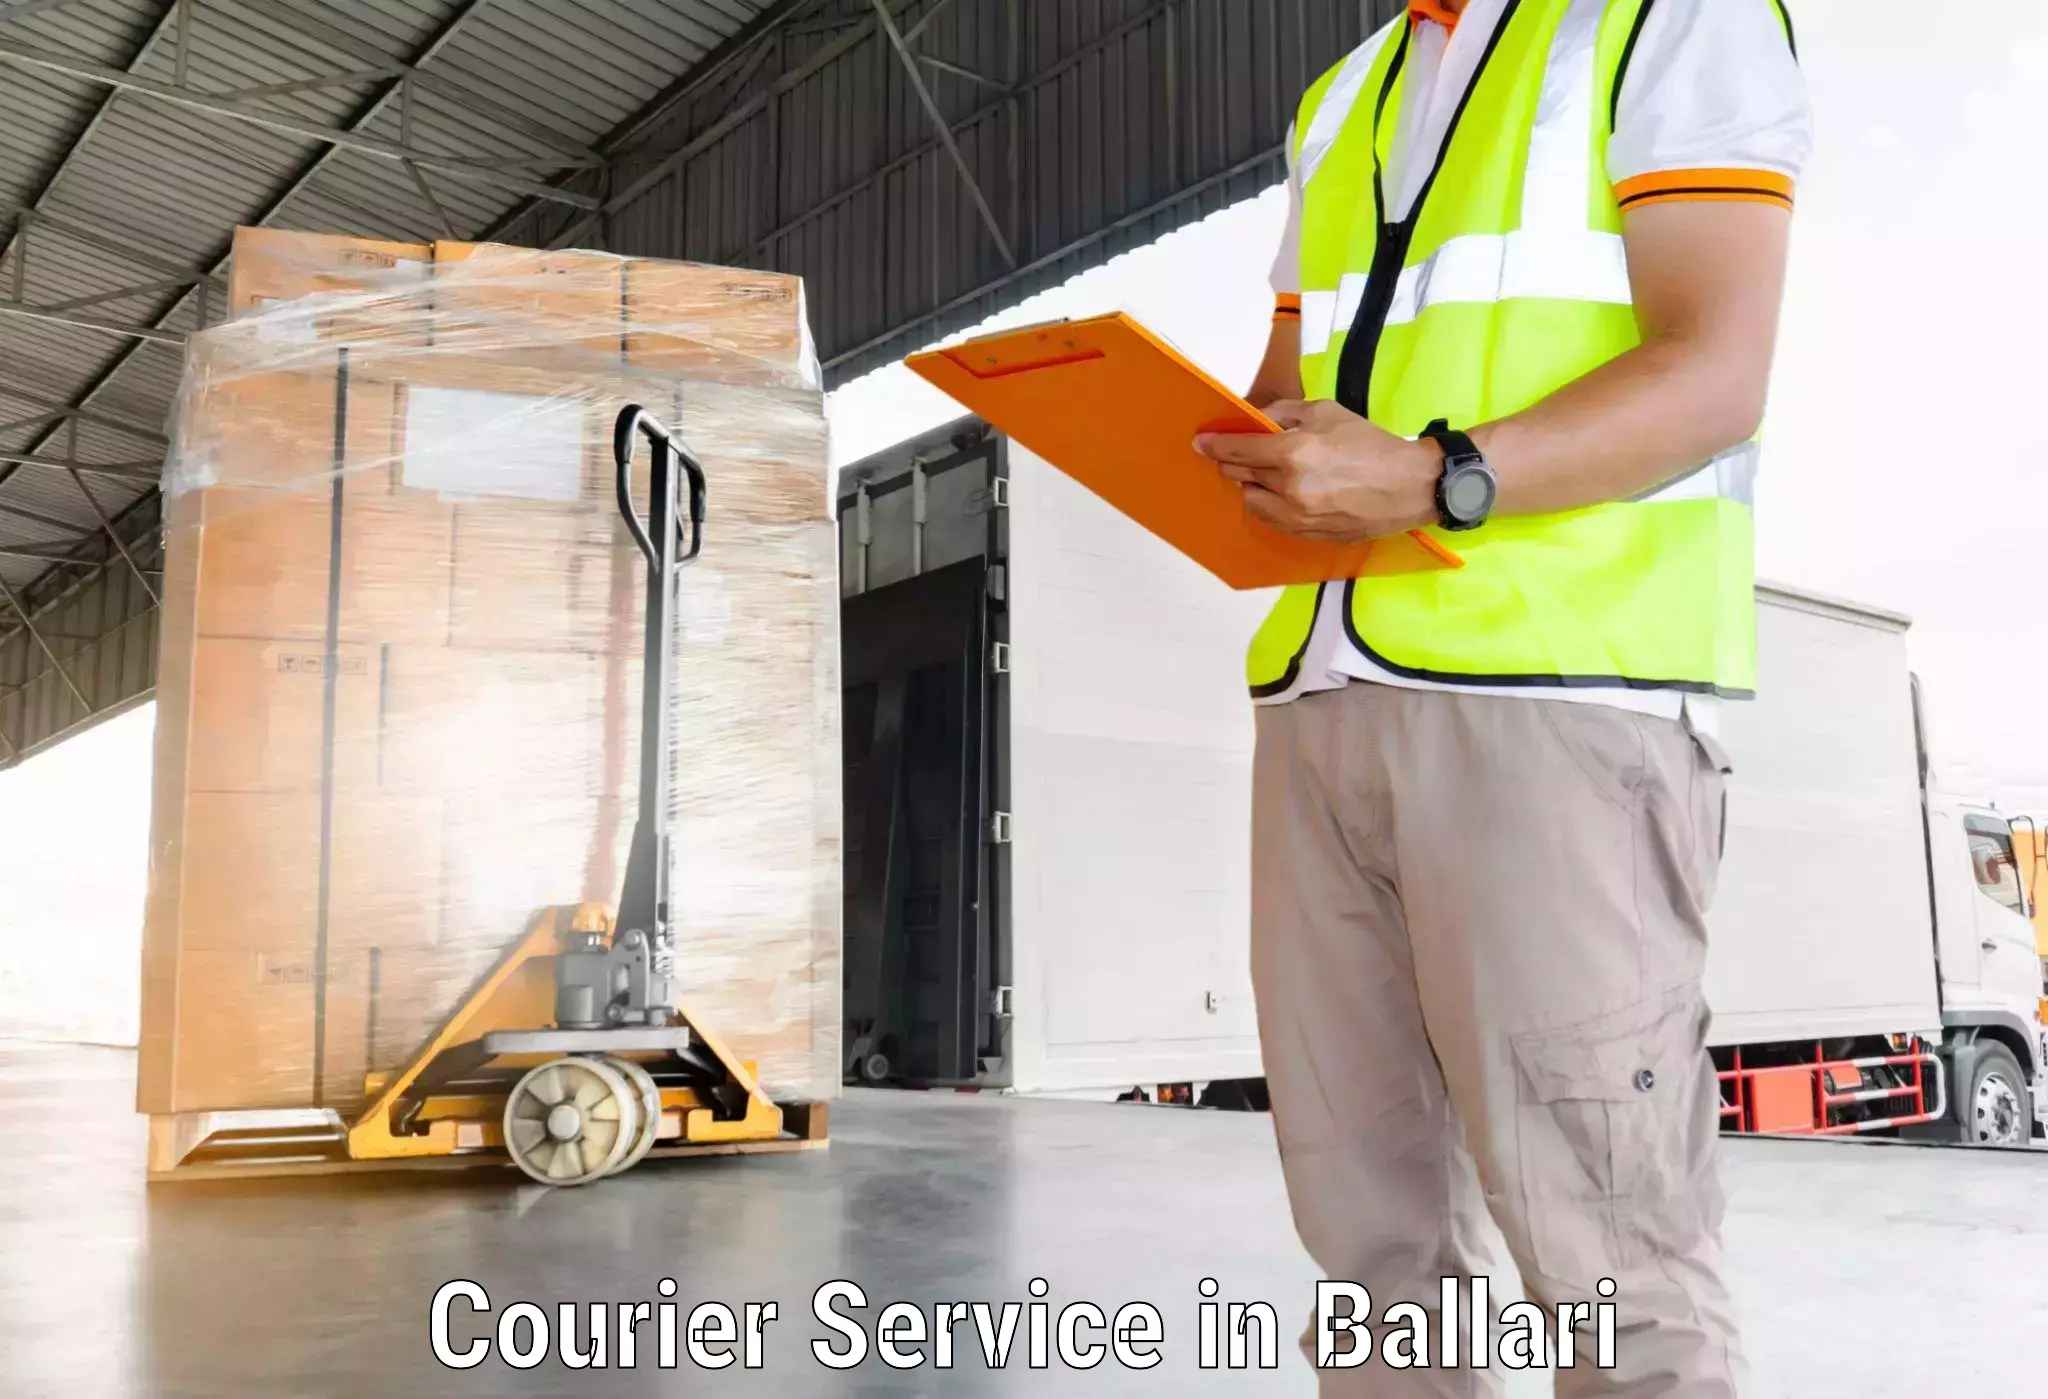 Efficient parcel delivery in Ballari